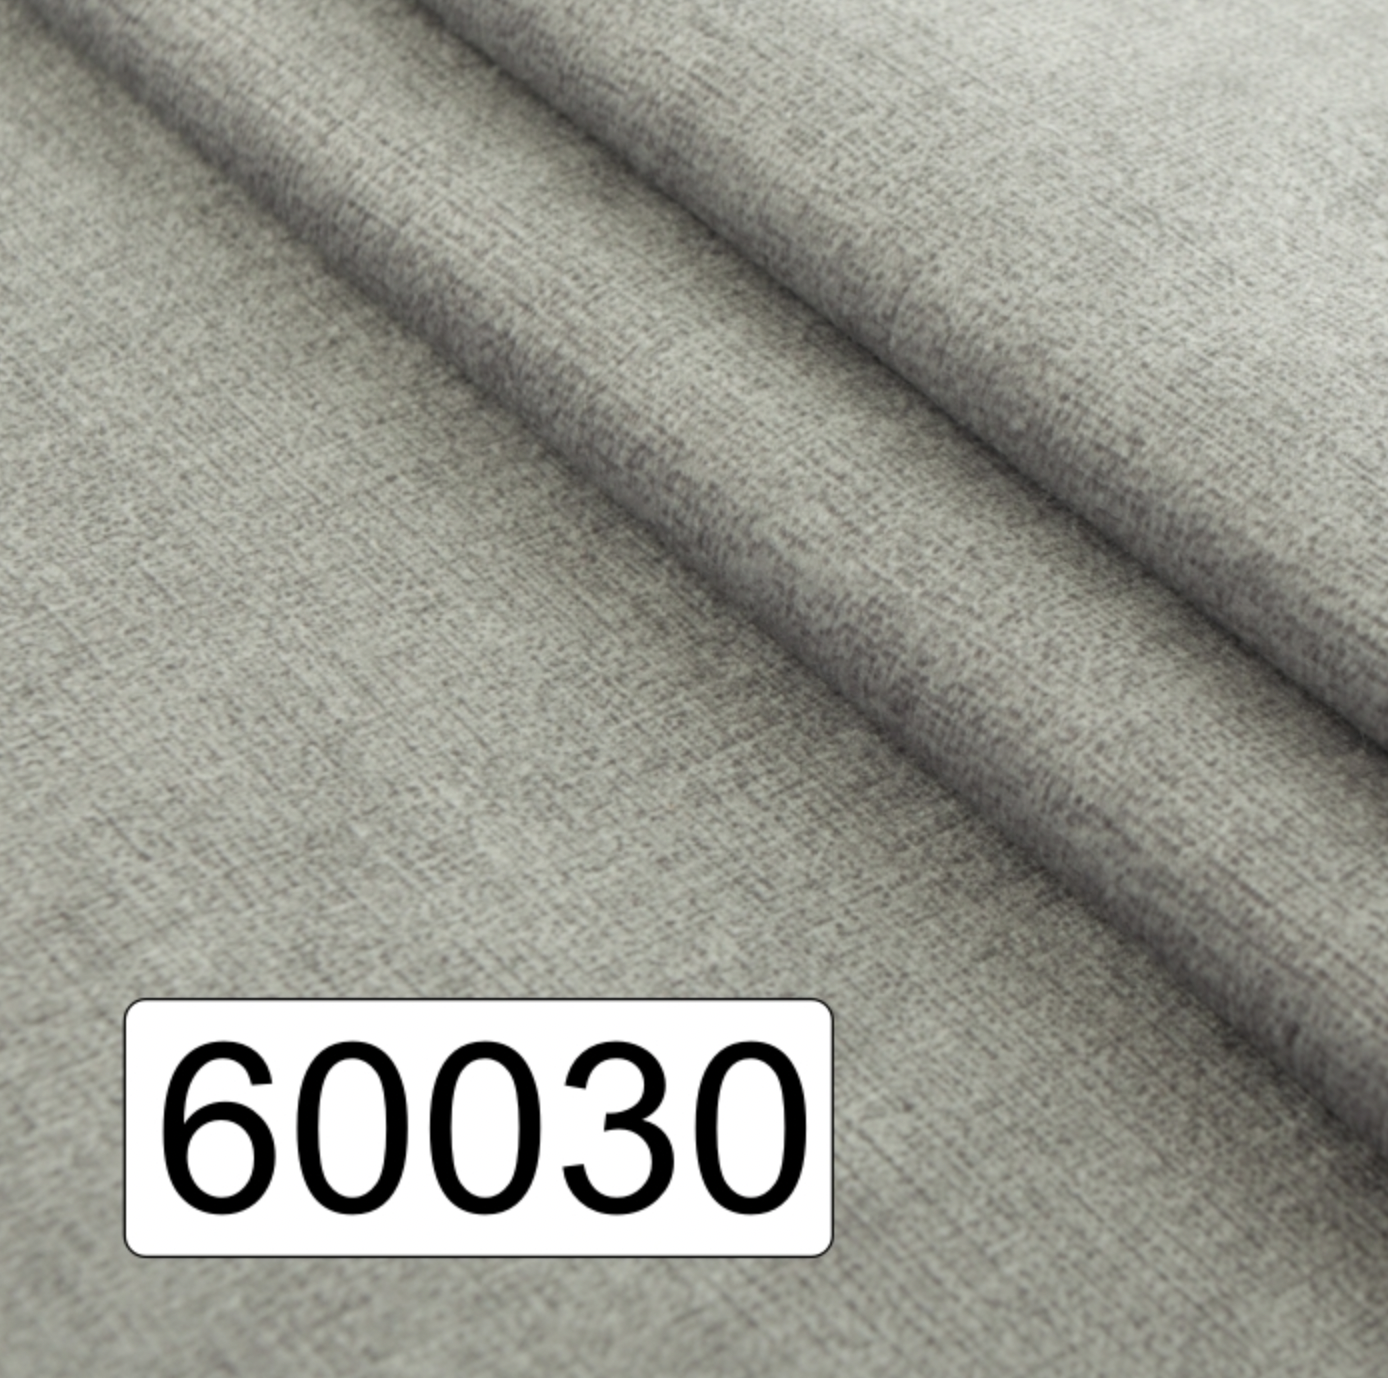 60030